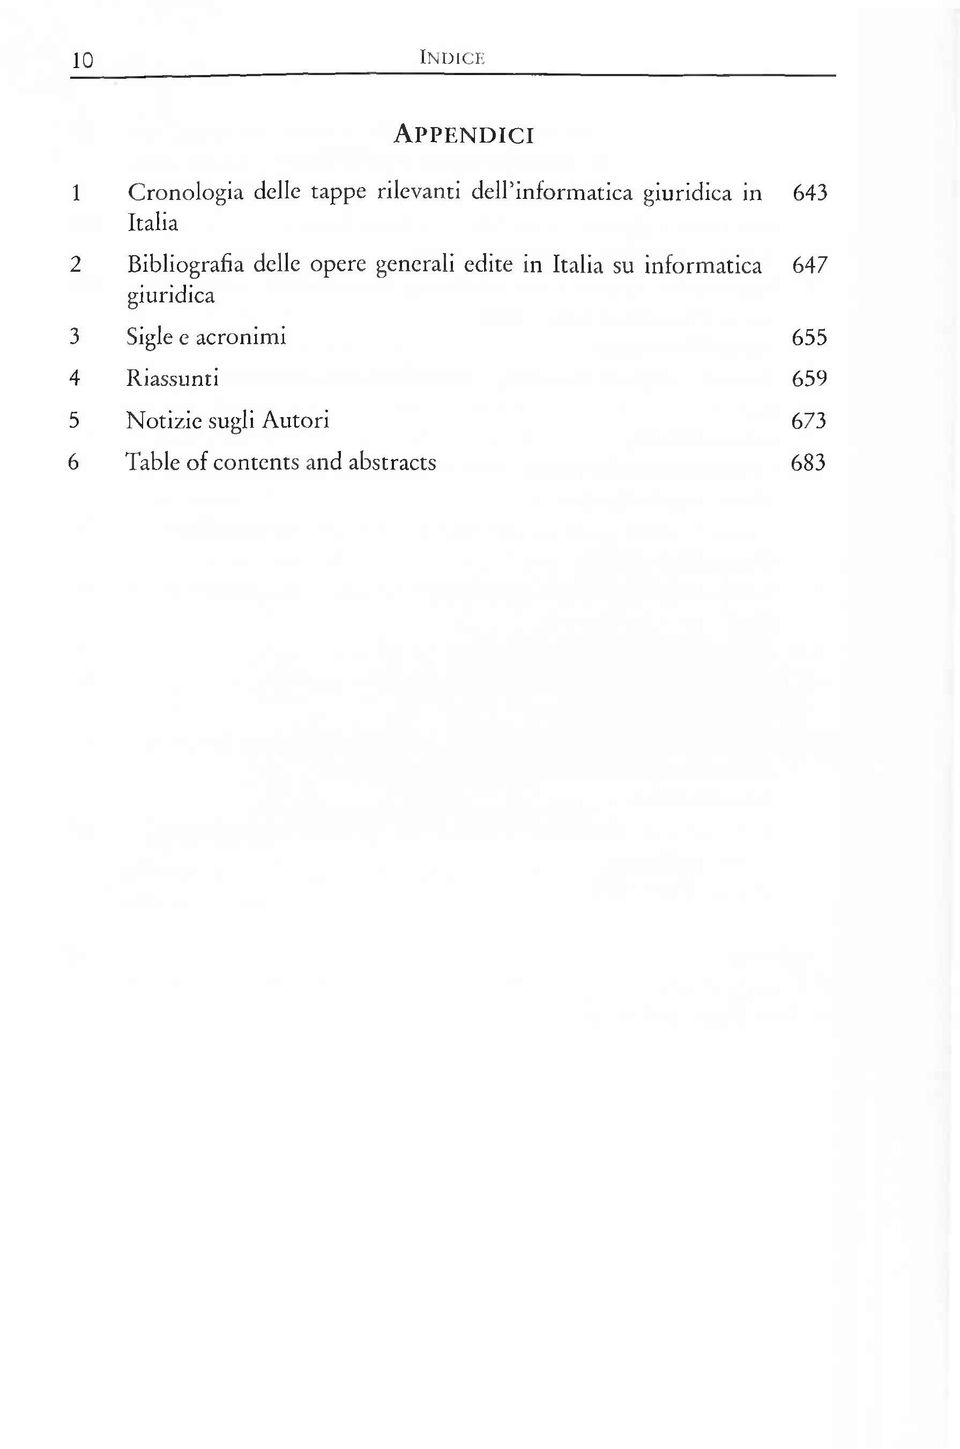 edite in Italia su inform atica 647 giuridica 3 Sigle e acronim i 655 4 R